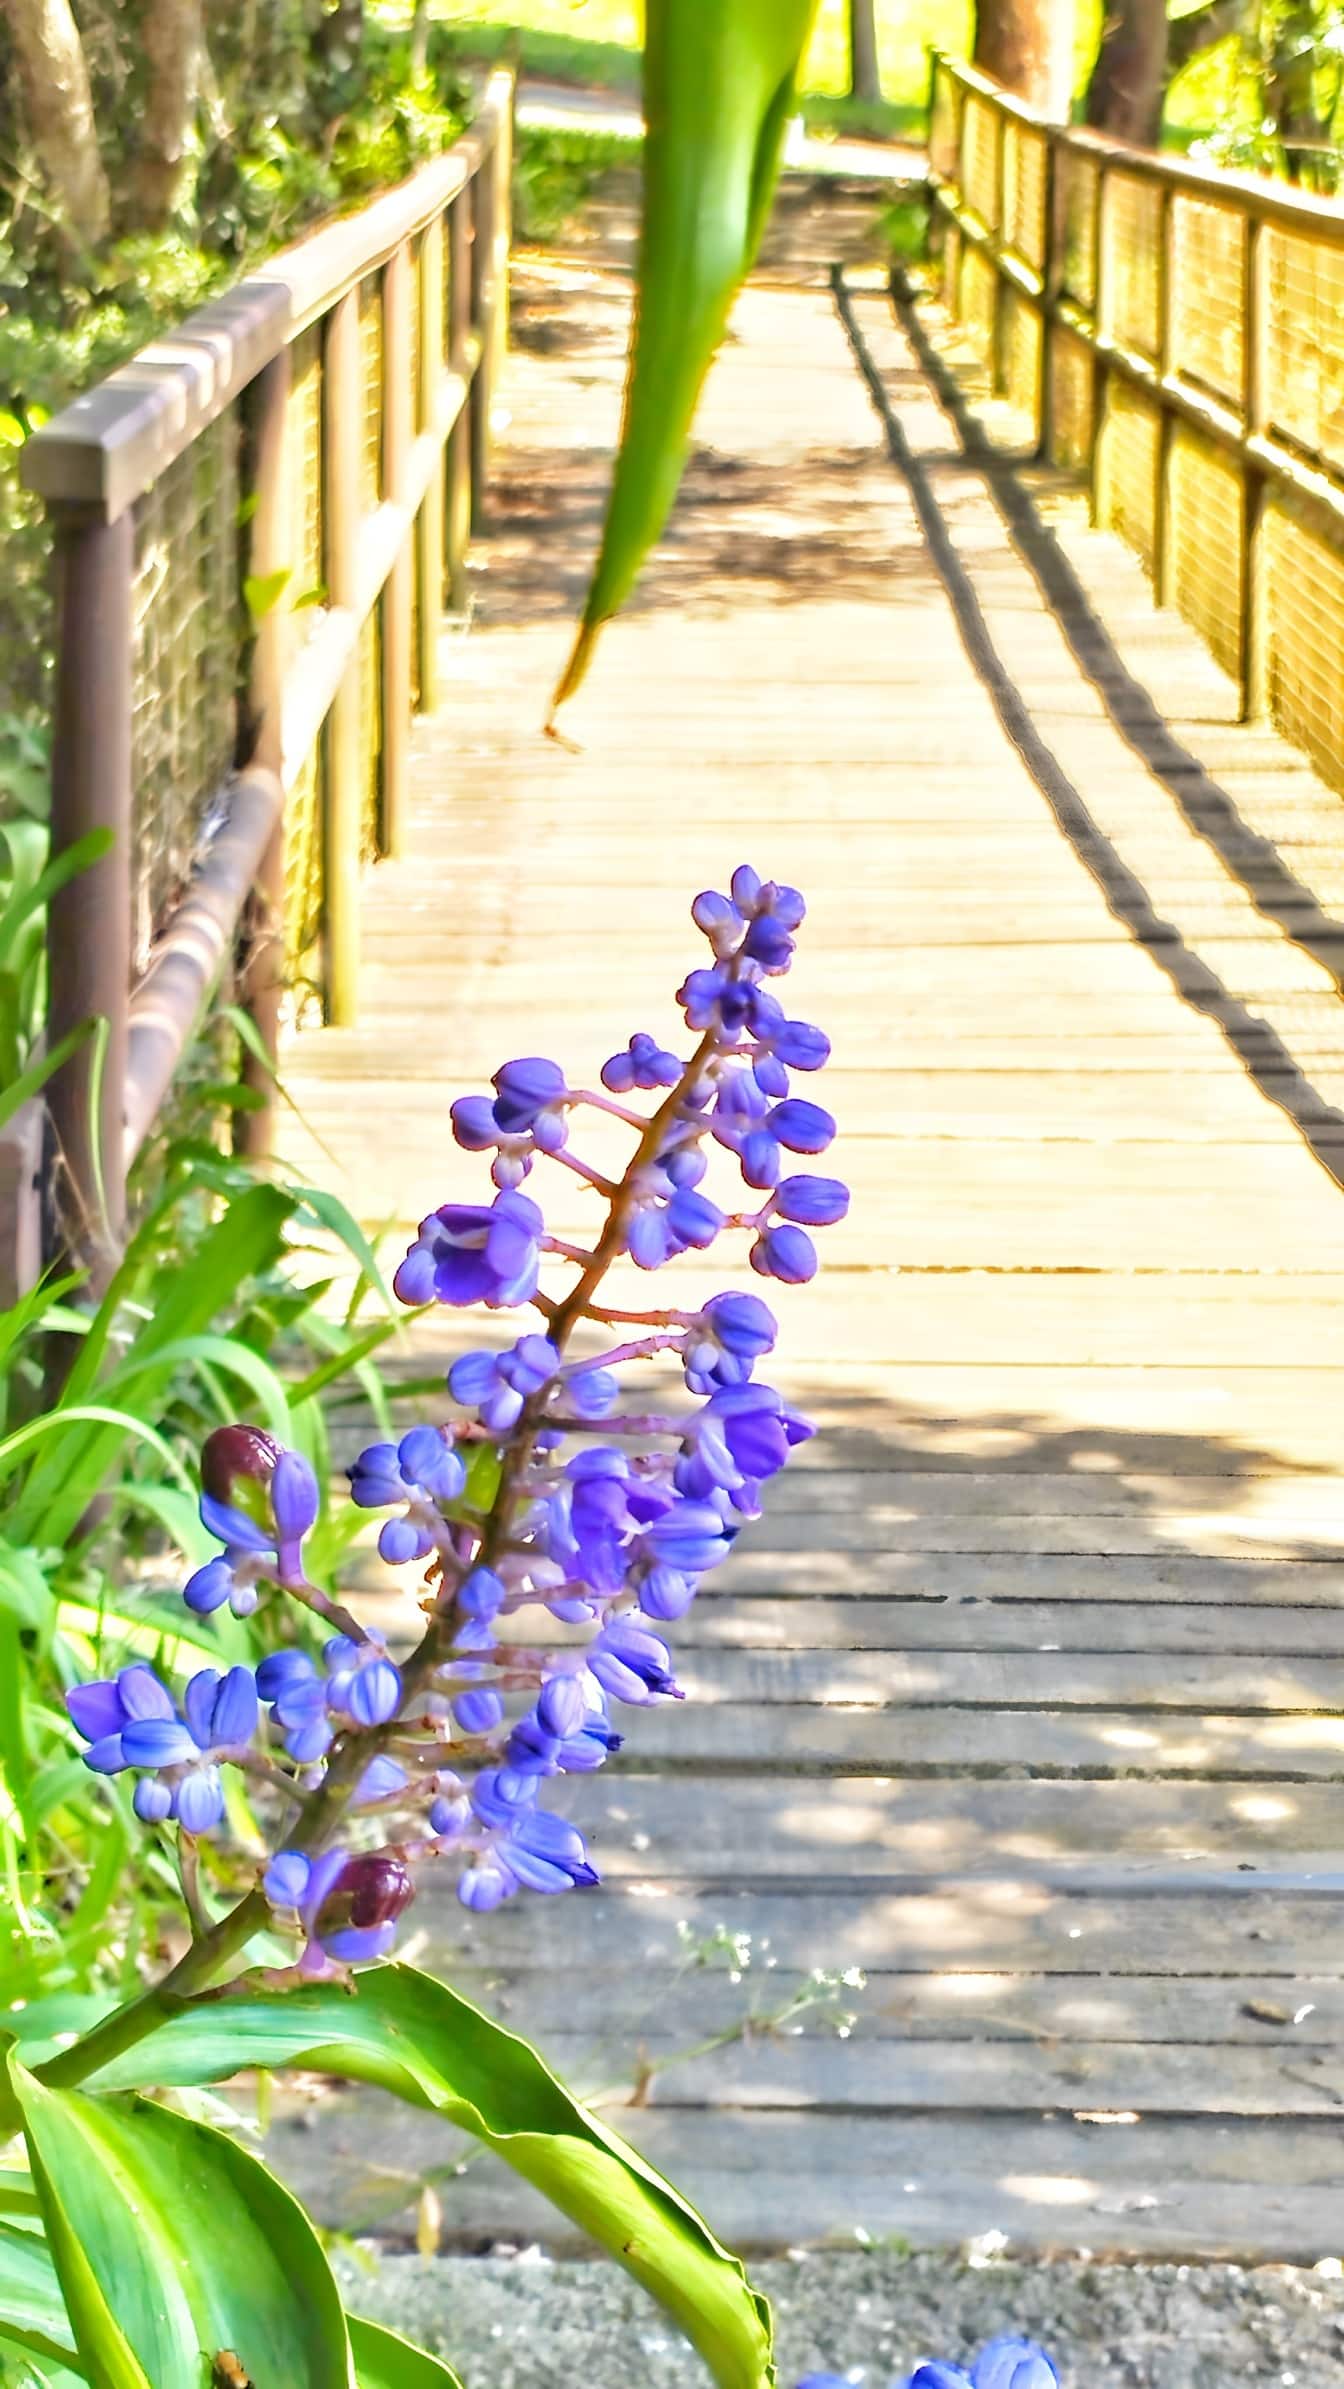 Plavi cvijet đumbira (Dichorisandra thyrsiflora) na šetnici preko drvenog mosta u botaničkom vrtu